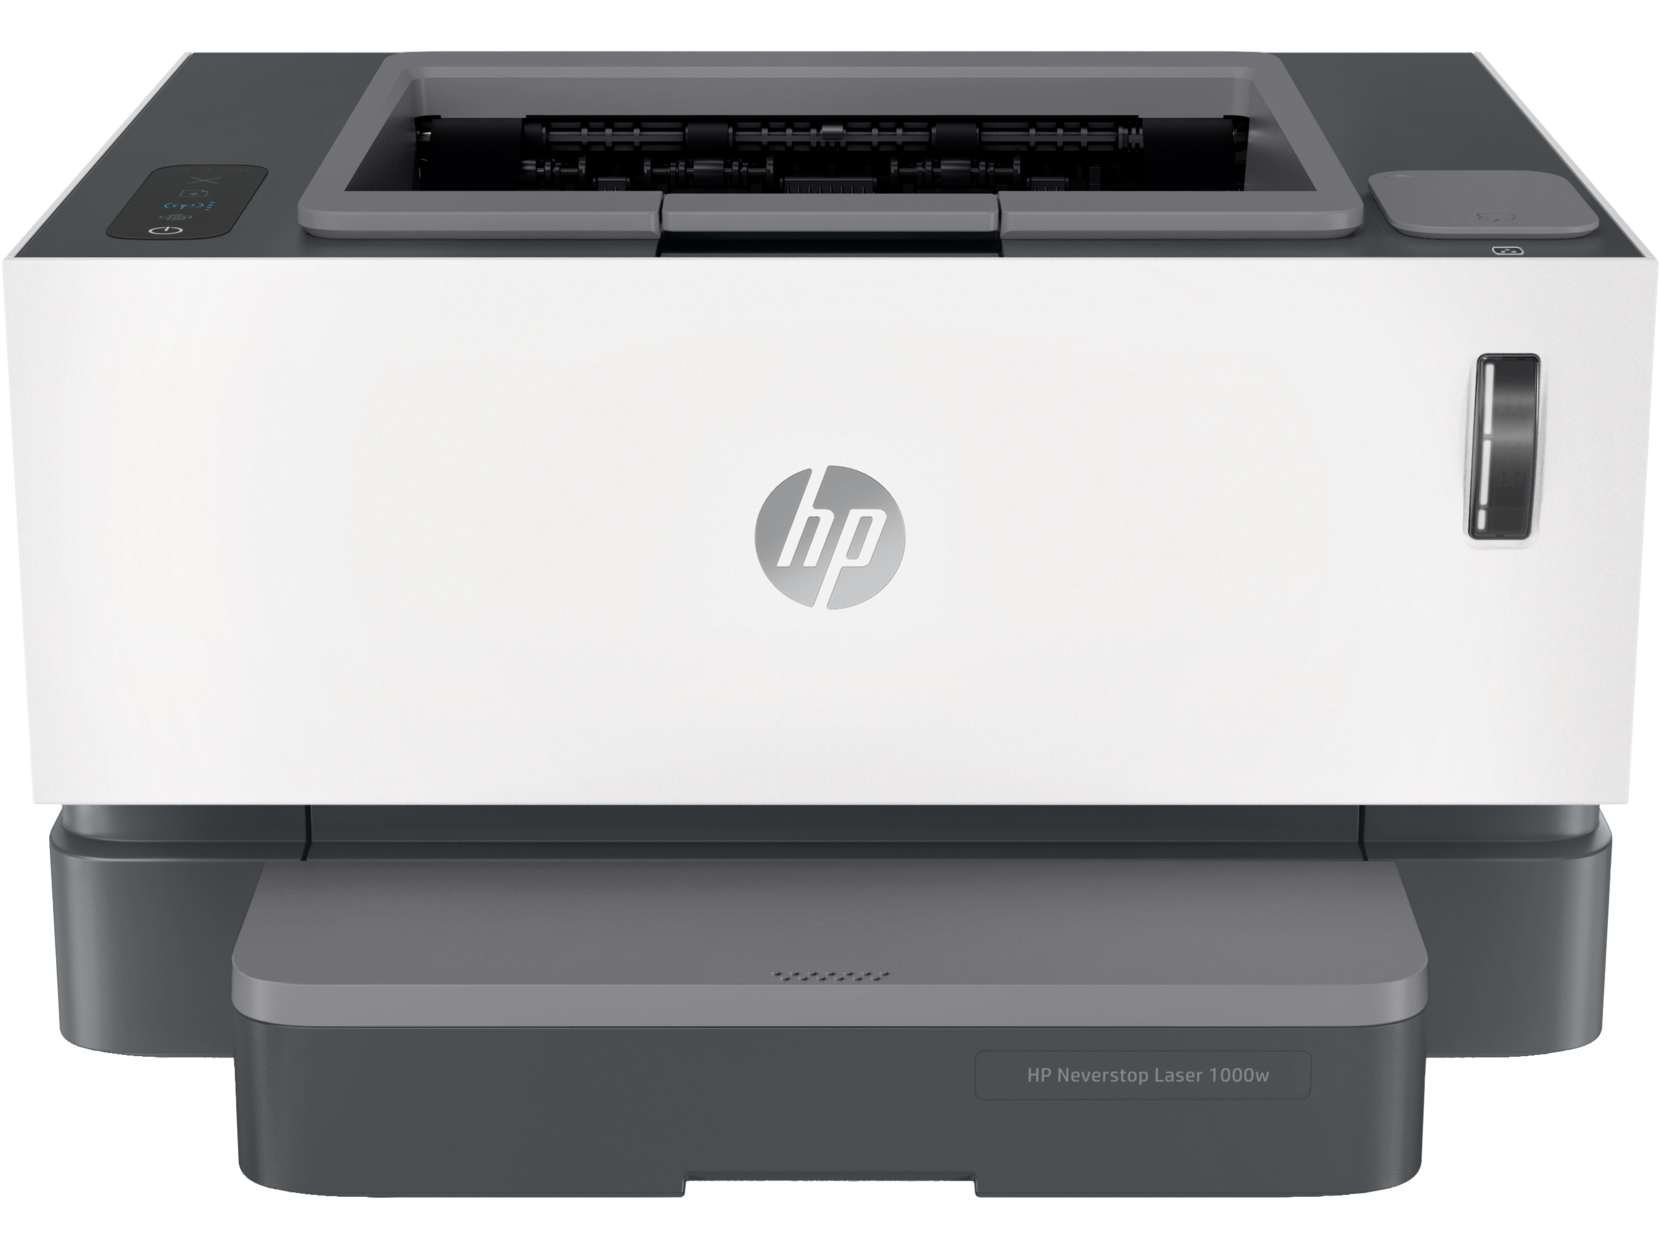 Принтер лазерный HP Neverstop Laser 1000w, A4, ч/б, 20стр/мин (A4 ч/б), 600x600dpi, Wi-Fi, USB, СНПТ (4RY23A) - фото 1